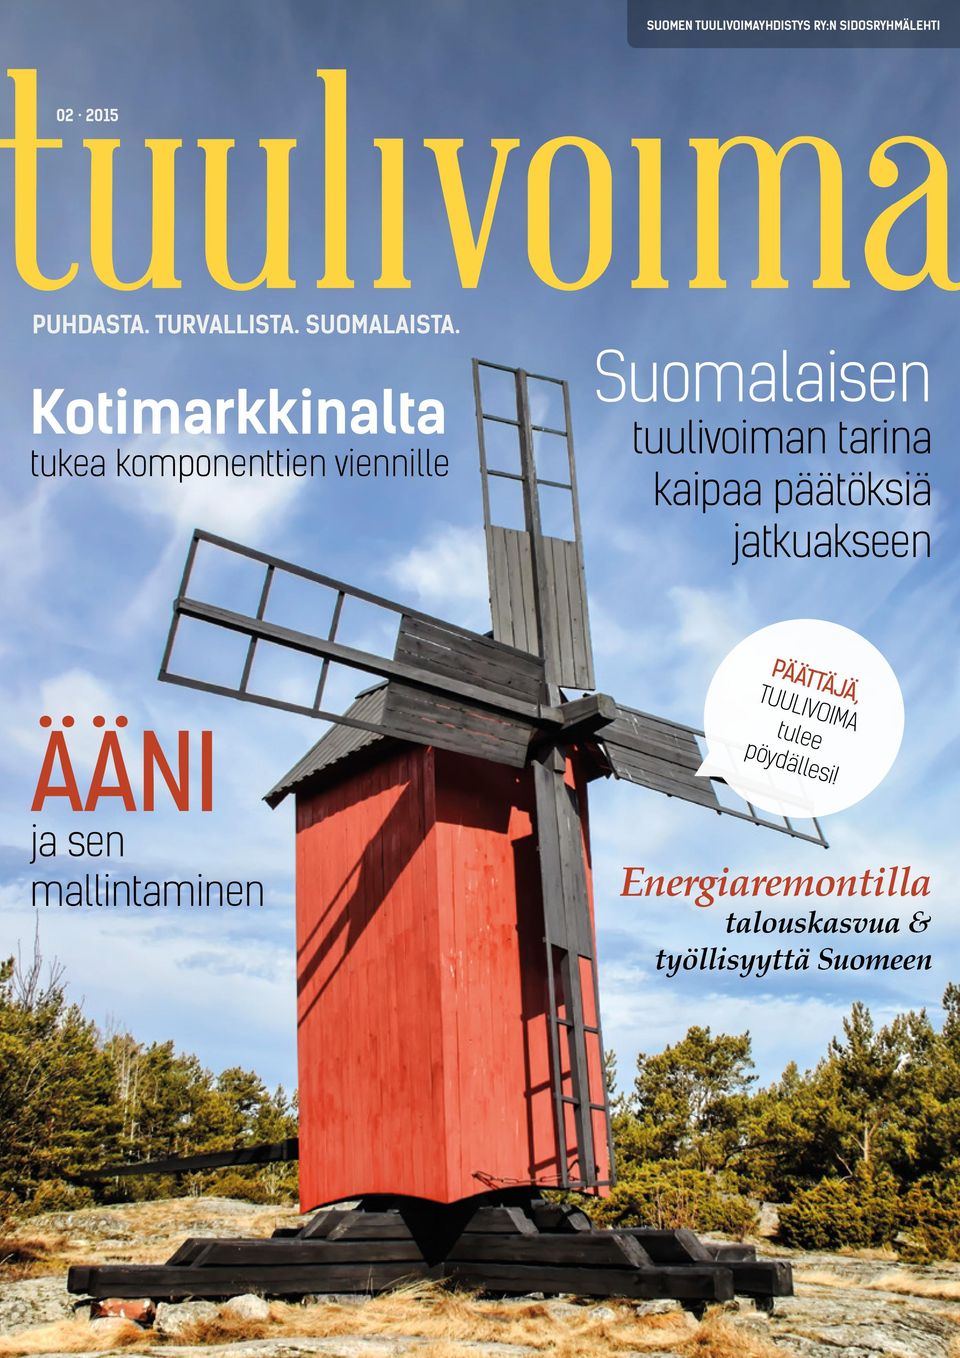 Kotimarkkinalta tukea komponenttien viennille Suomalaisen tuulivoiman tarina